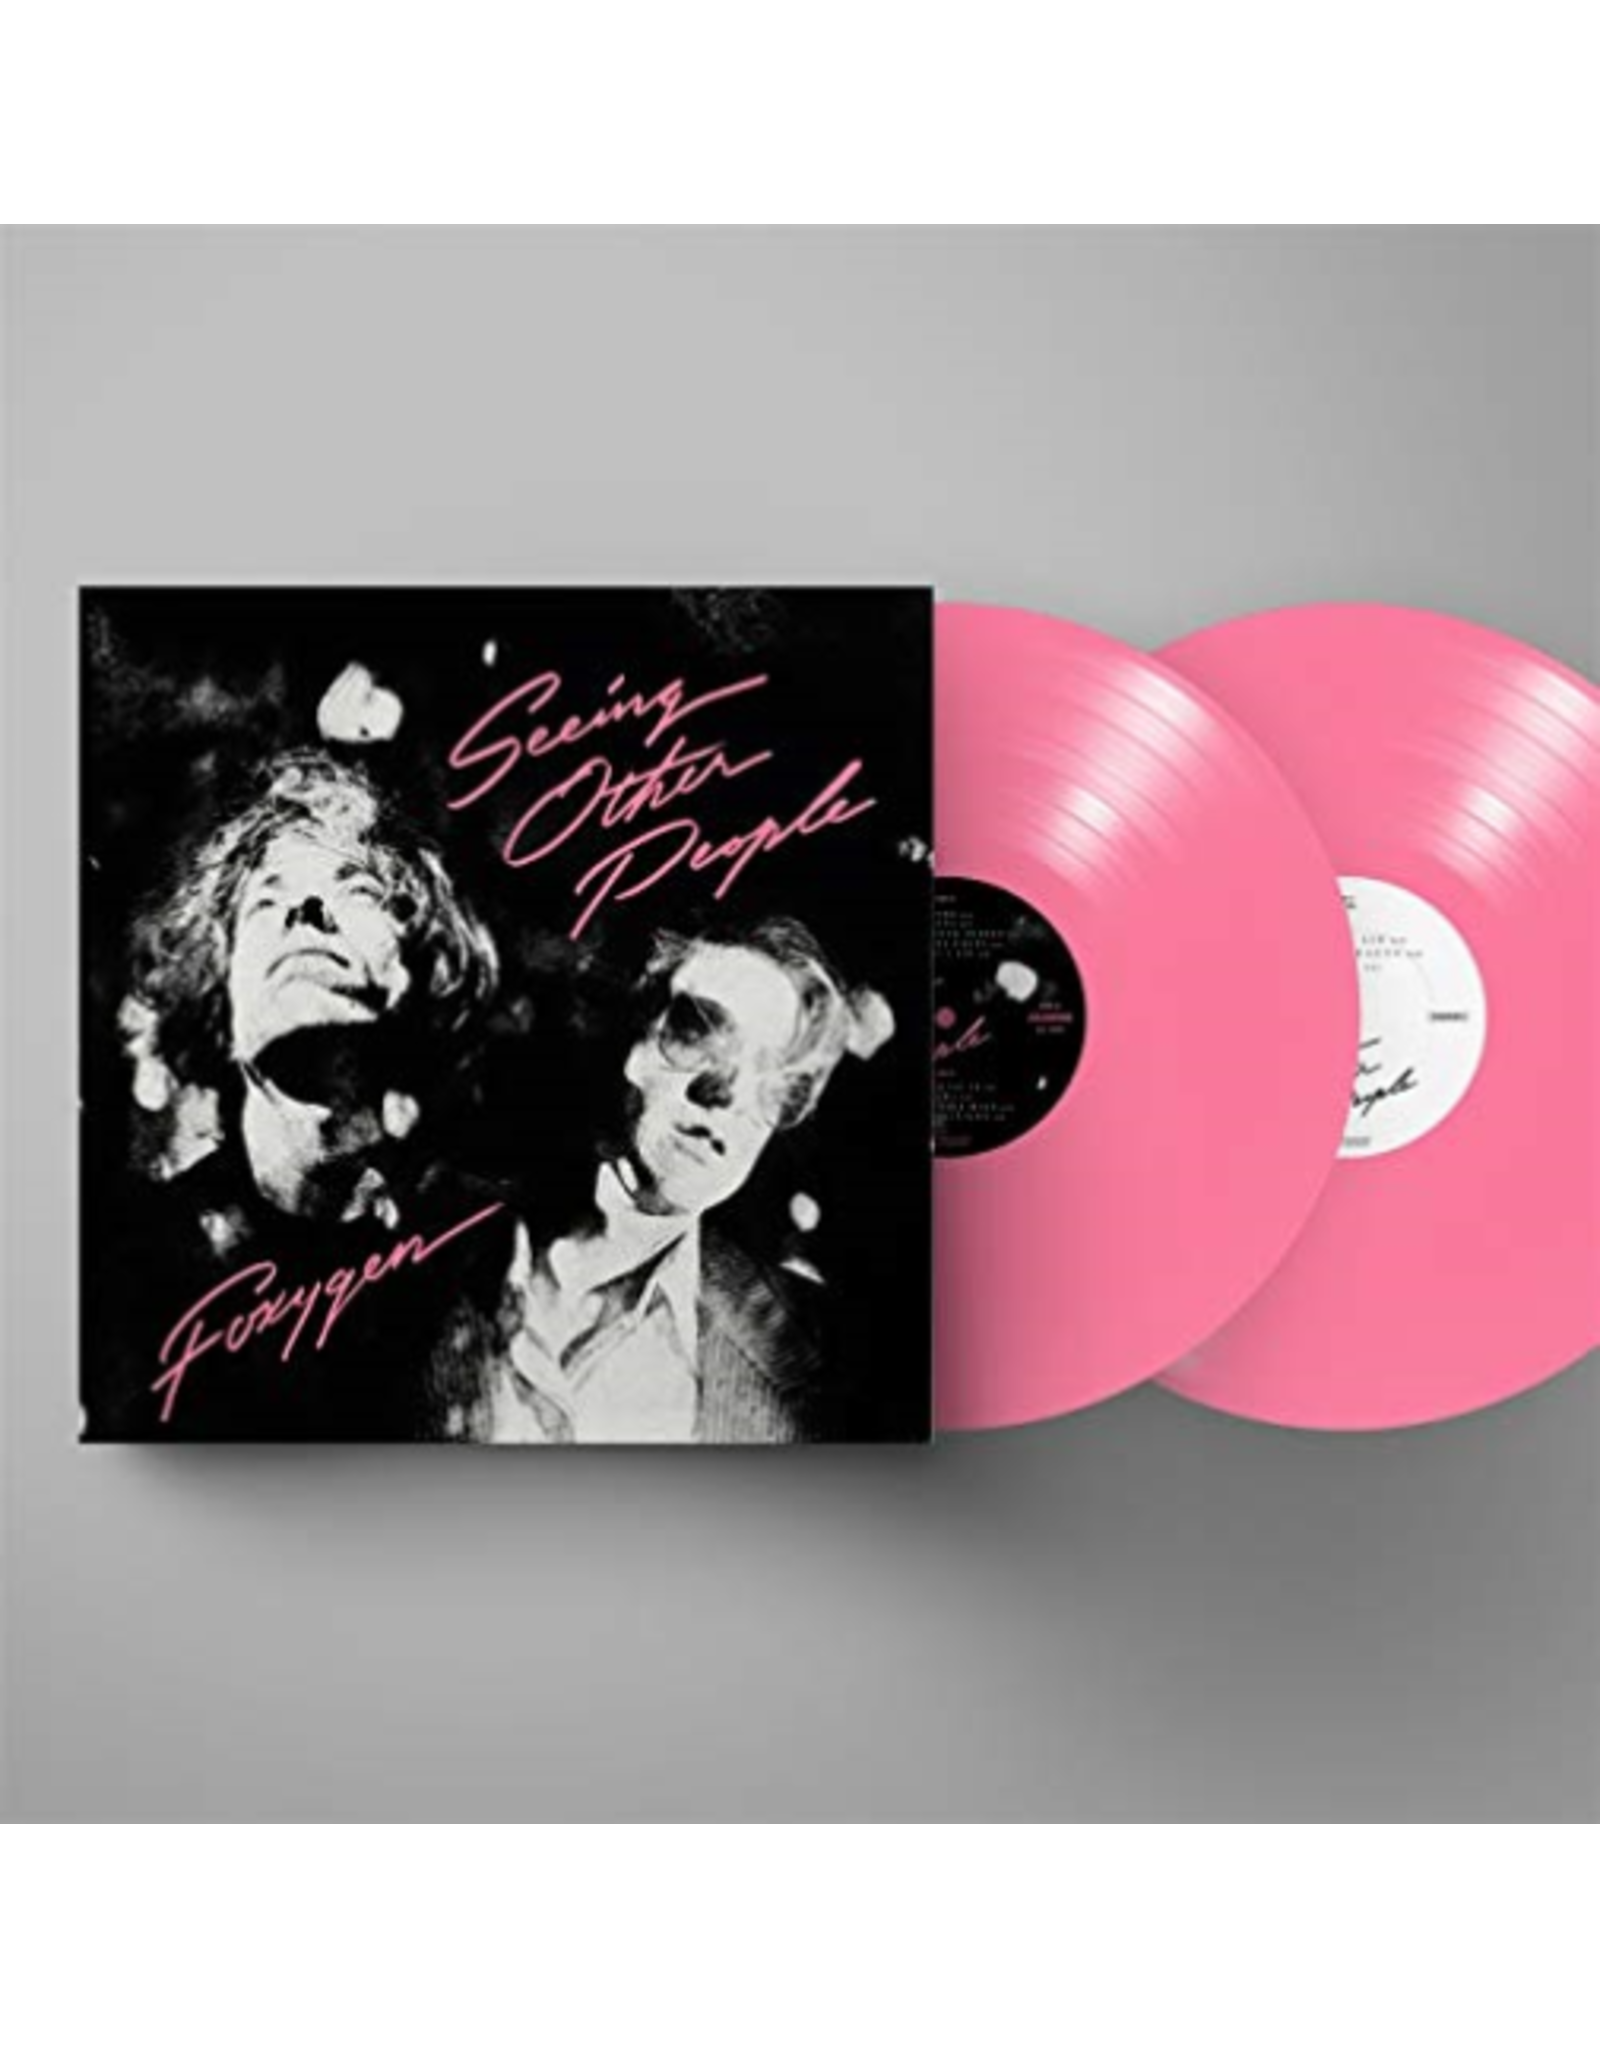 Foxygen - Seeing Other People LP + demos 12’’ (pink)